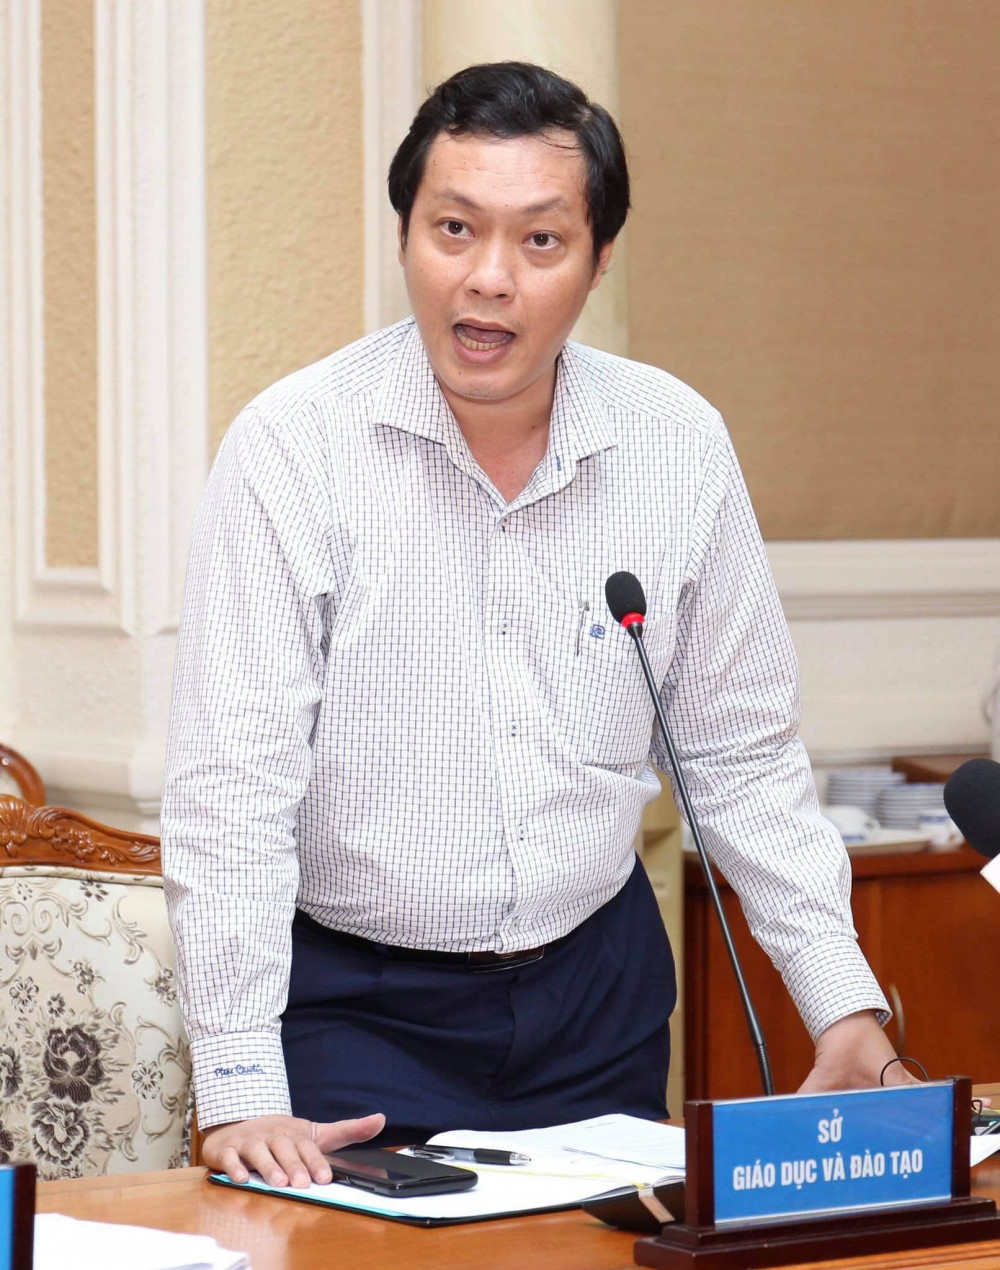 Ông Nguyễn Thành Trung - Chánh văn phòng Sở Giáo dục và Đào tạo TPHCM - trả lời tại buổi họp báo do UBND TPHCM tổ chức chiều 23/7 - Ảnh: TTBC